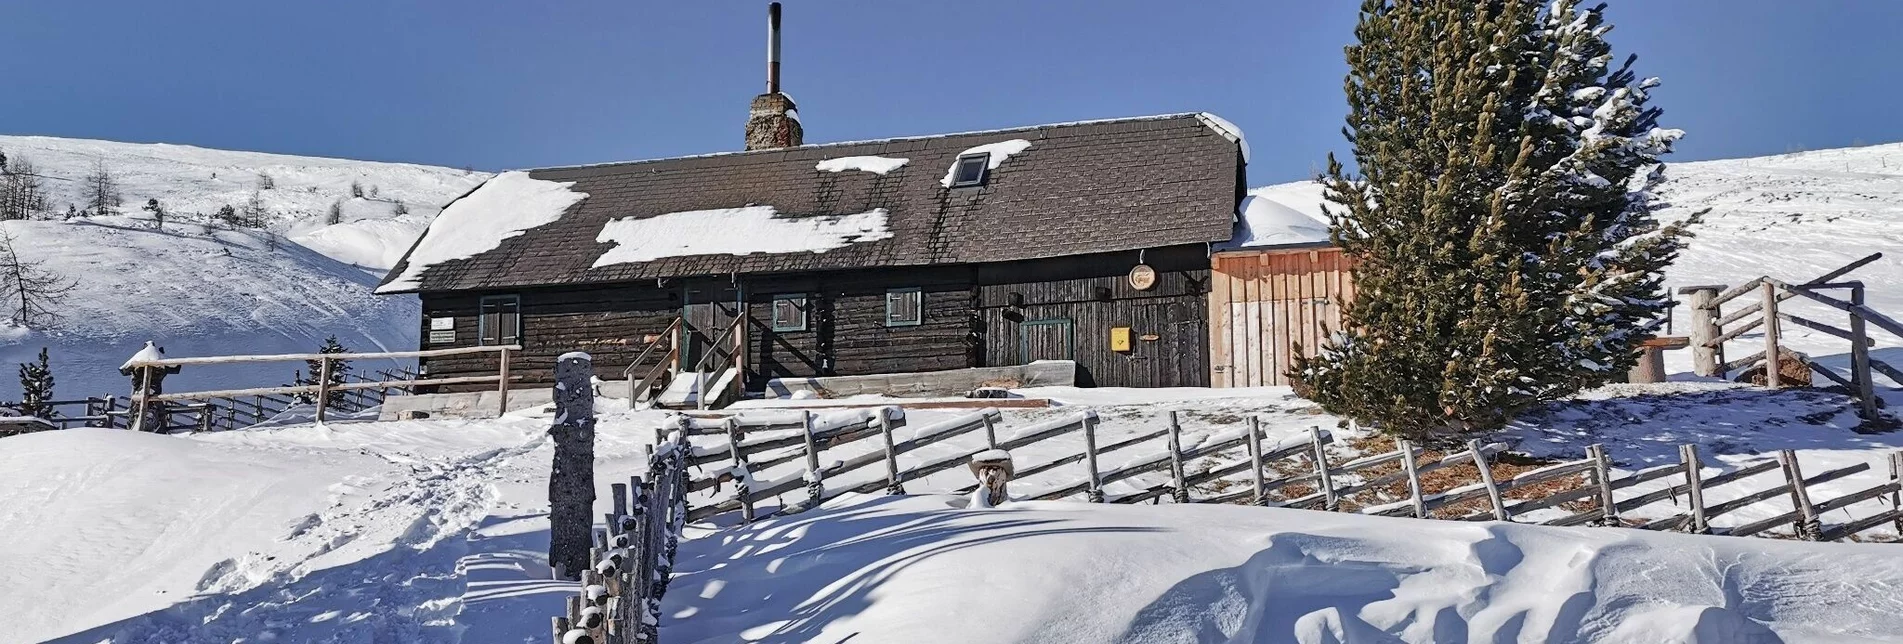 Schneeschuh Mit Schneeschuhen von Hütte zu Hütte - Touren-Impression #1 | © Weges OG